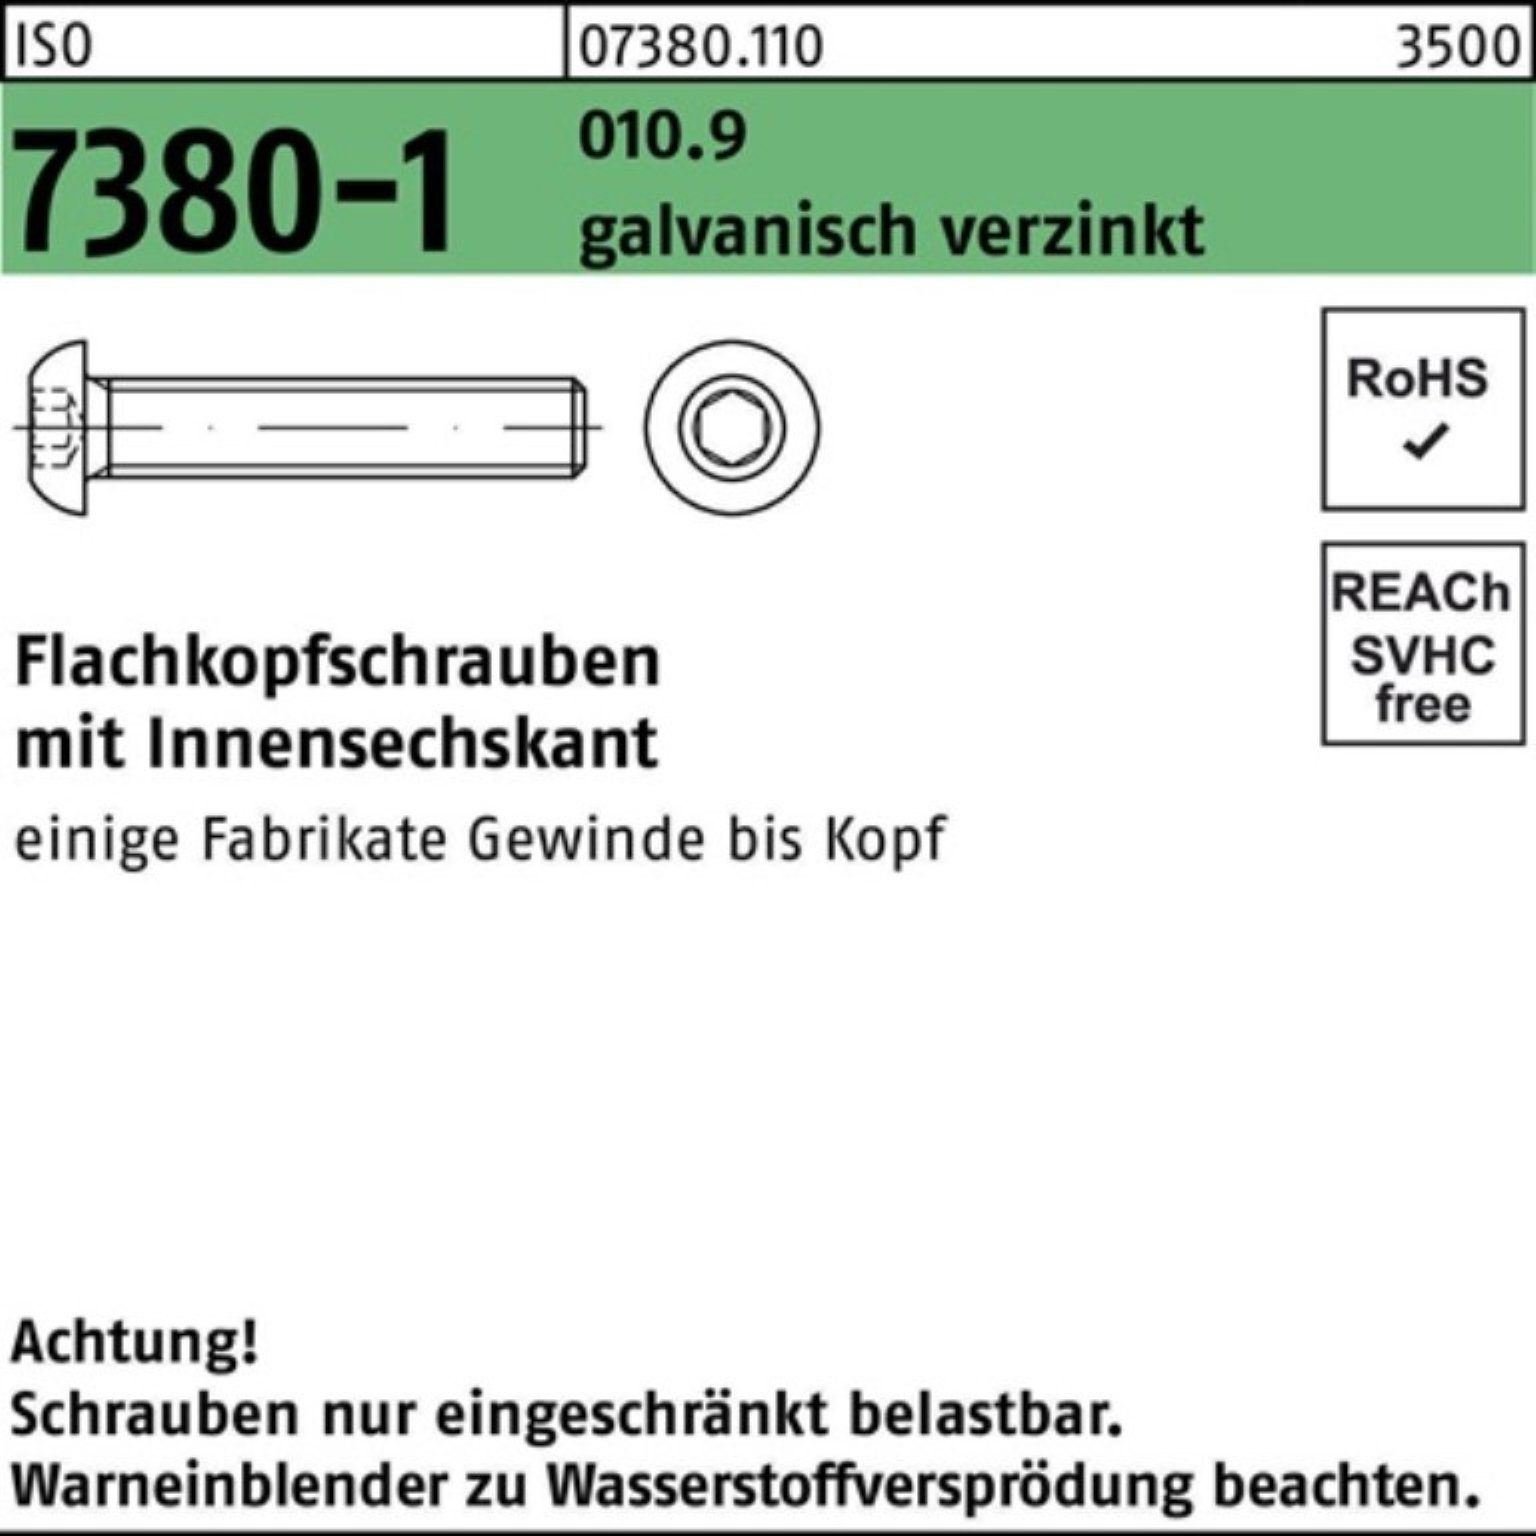 Reyher Schraube 500er 010.9 ISO Pack Innen-6kt 7380-1 galv.verz M3x6 Flachkopfschraube